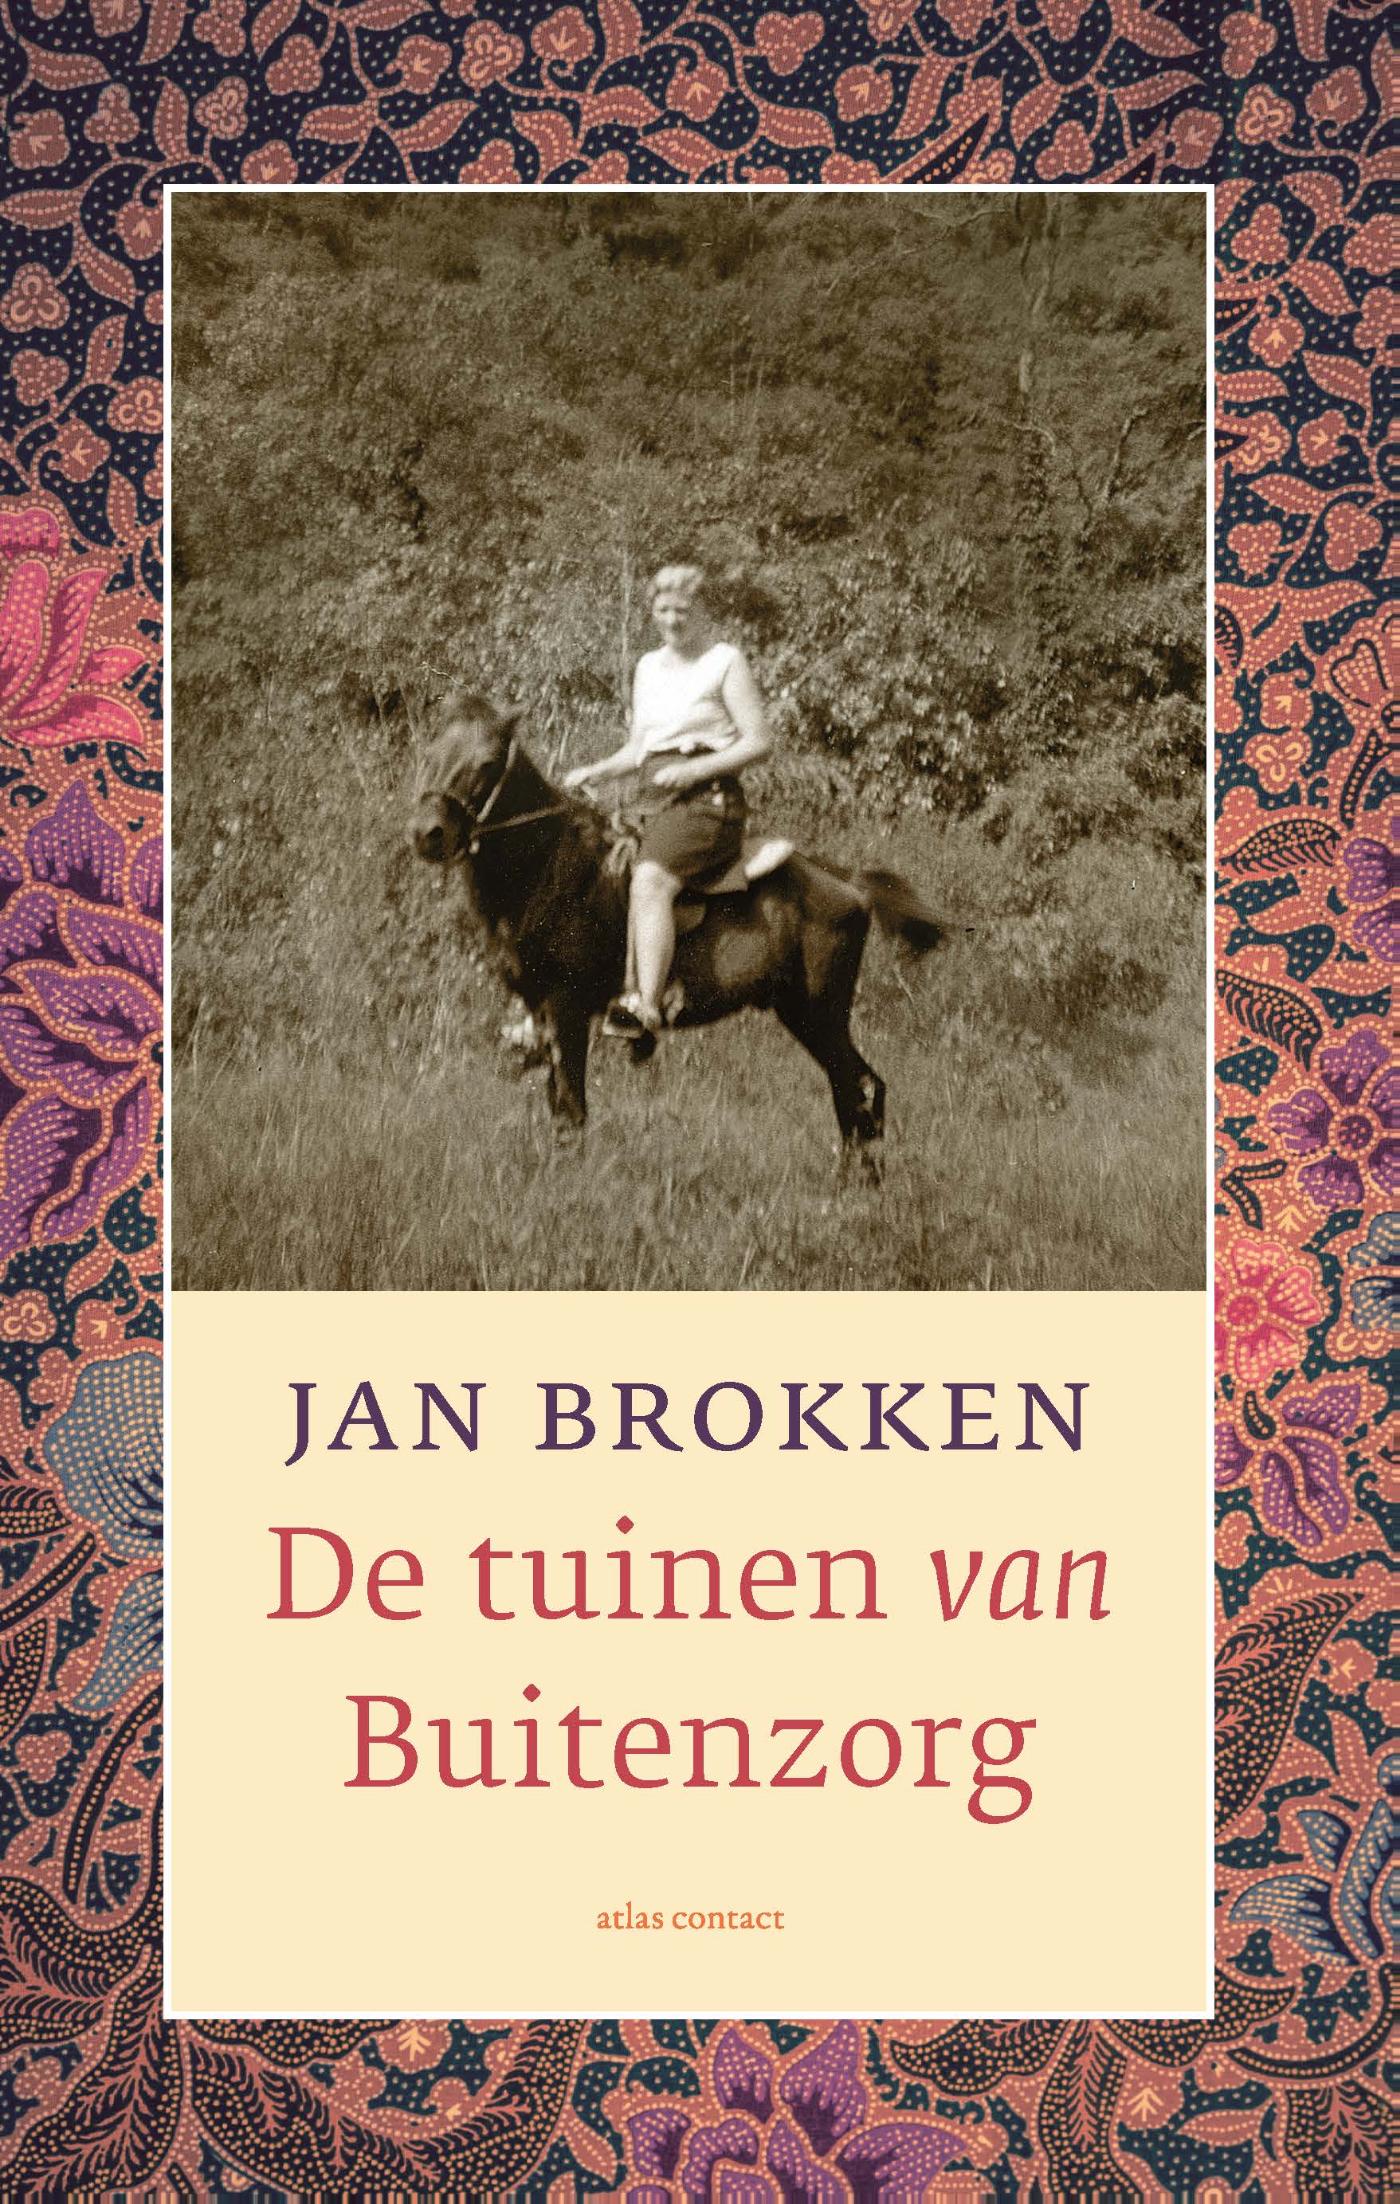 Online bestellen: Reisverhaal De tuinen van Buitenzorg | Jan Brokken